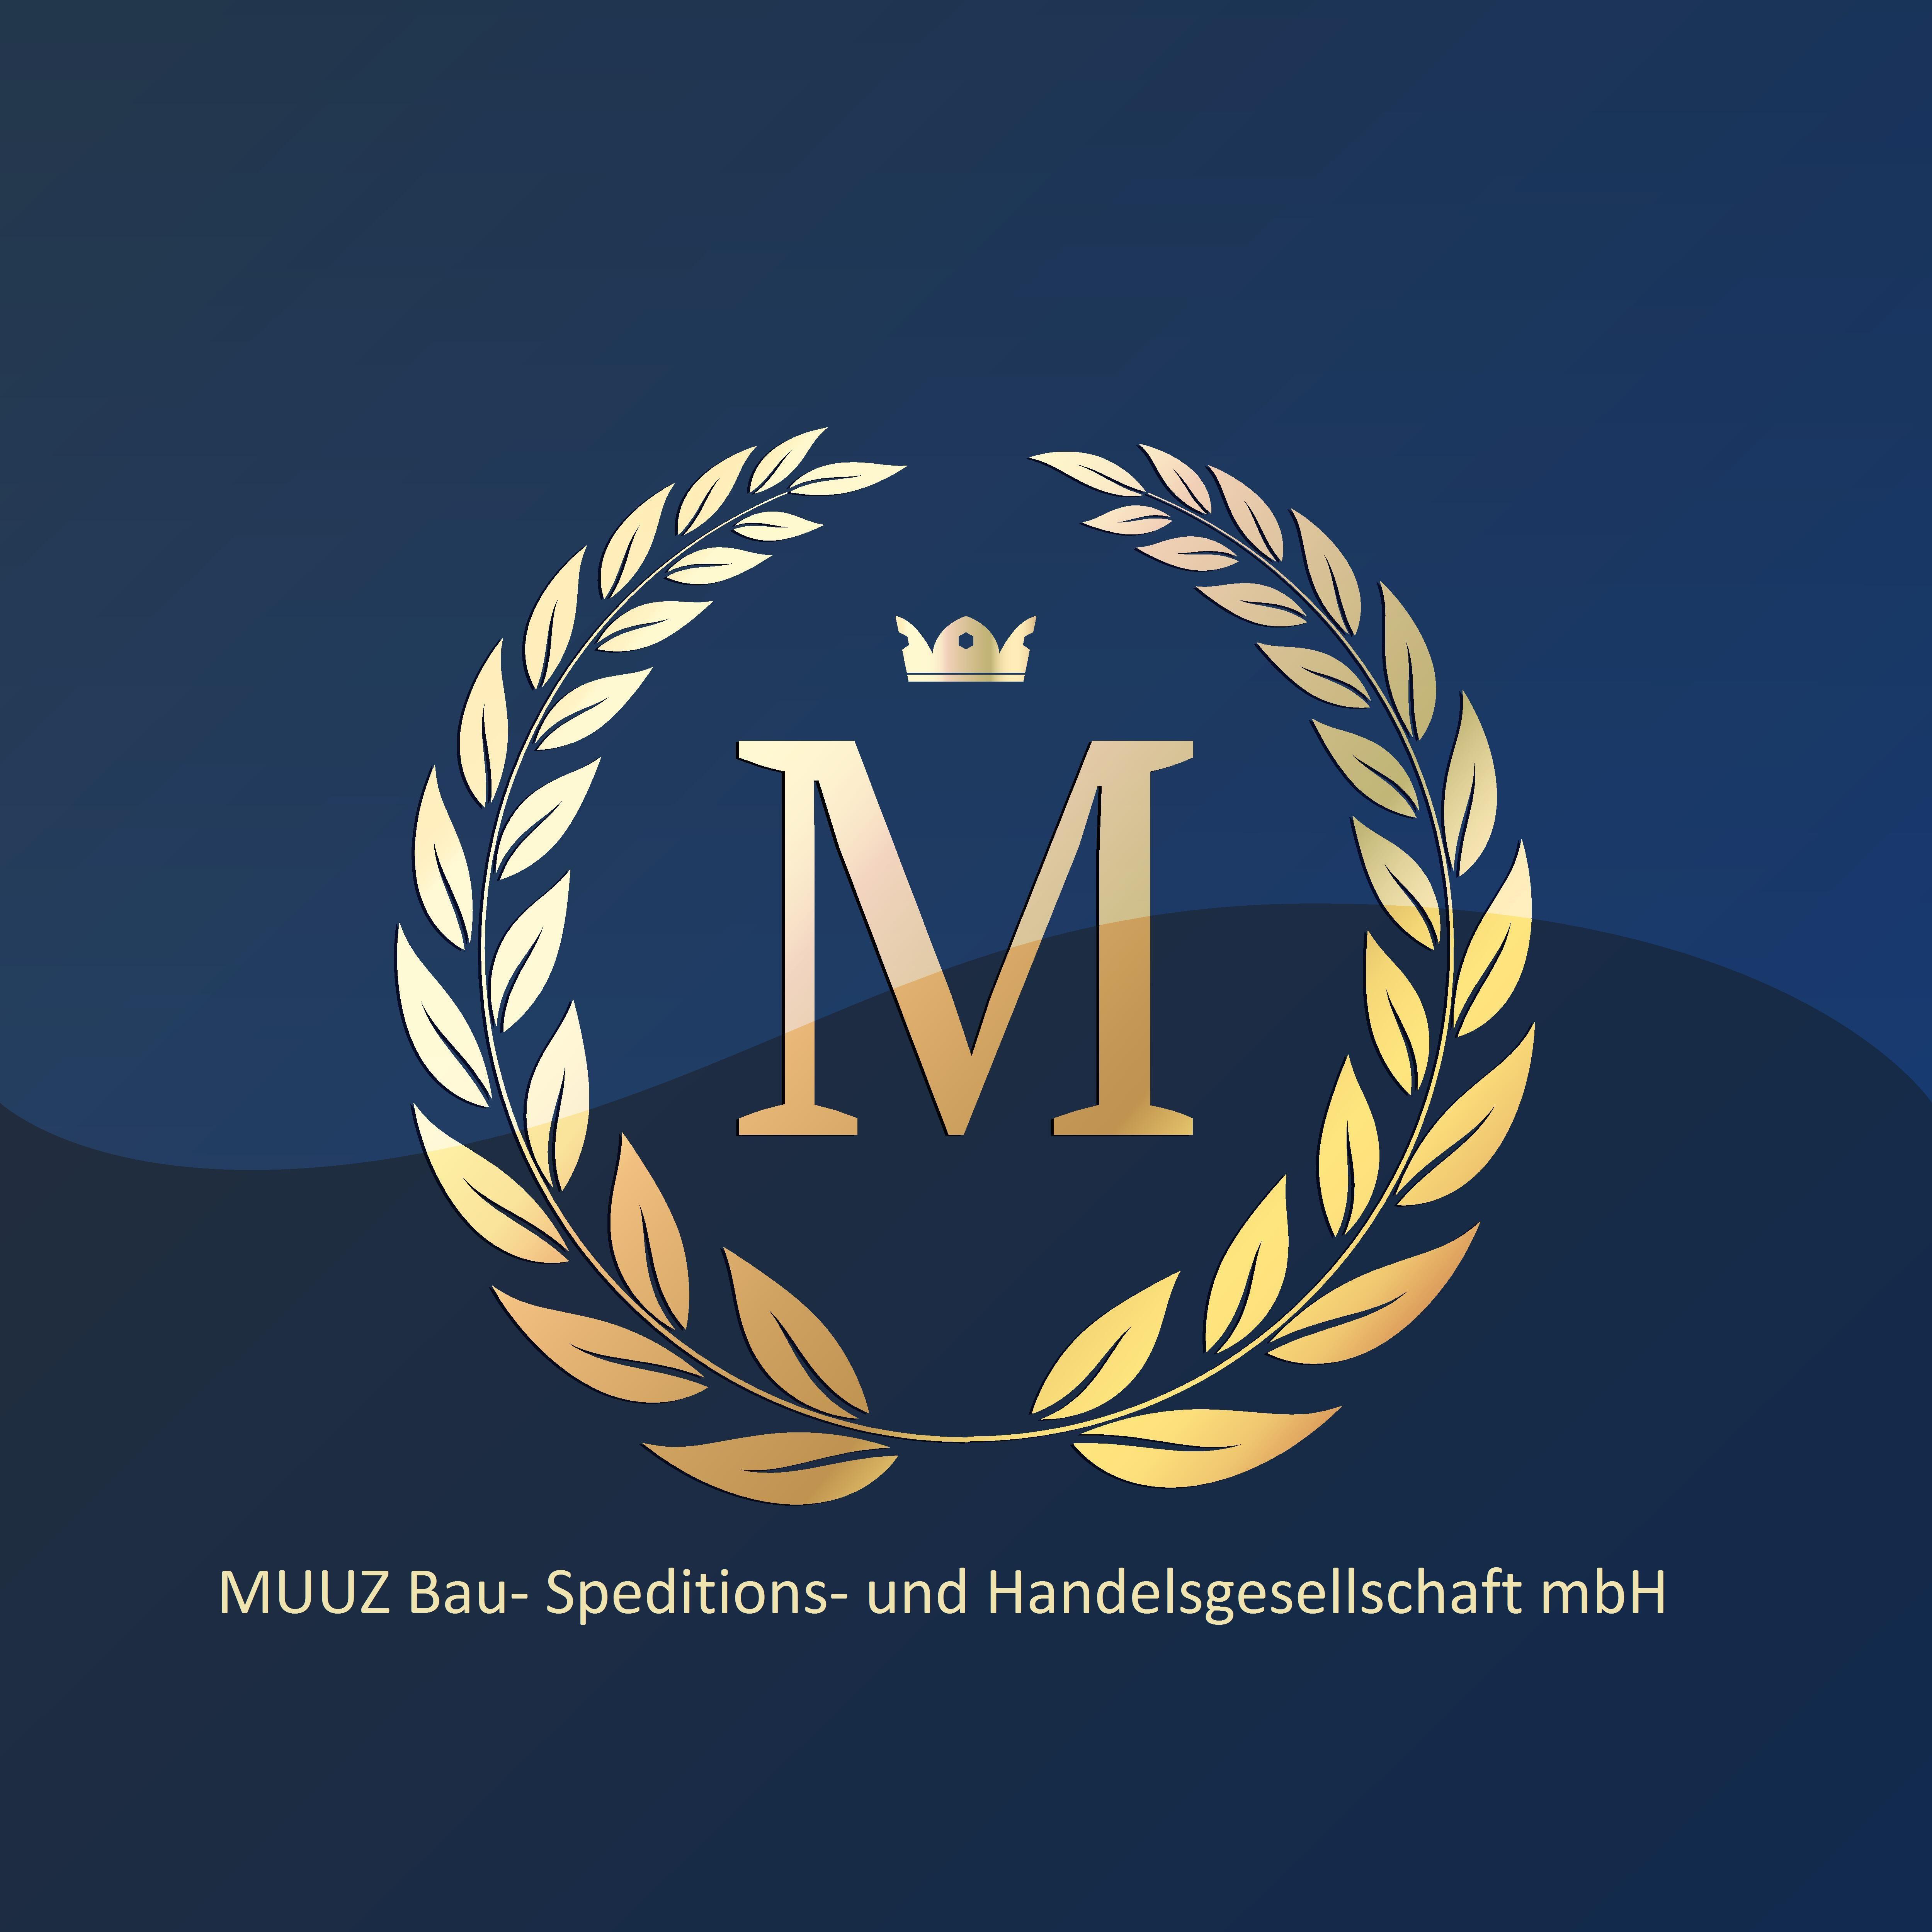 MUUZ Bau- Spedition- und- Handelsgesellschaft mbH